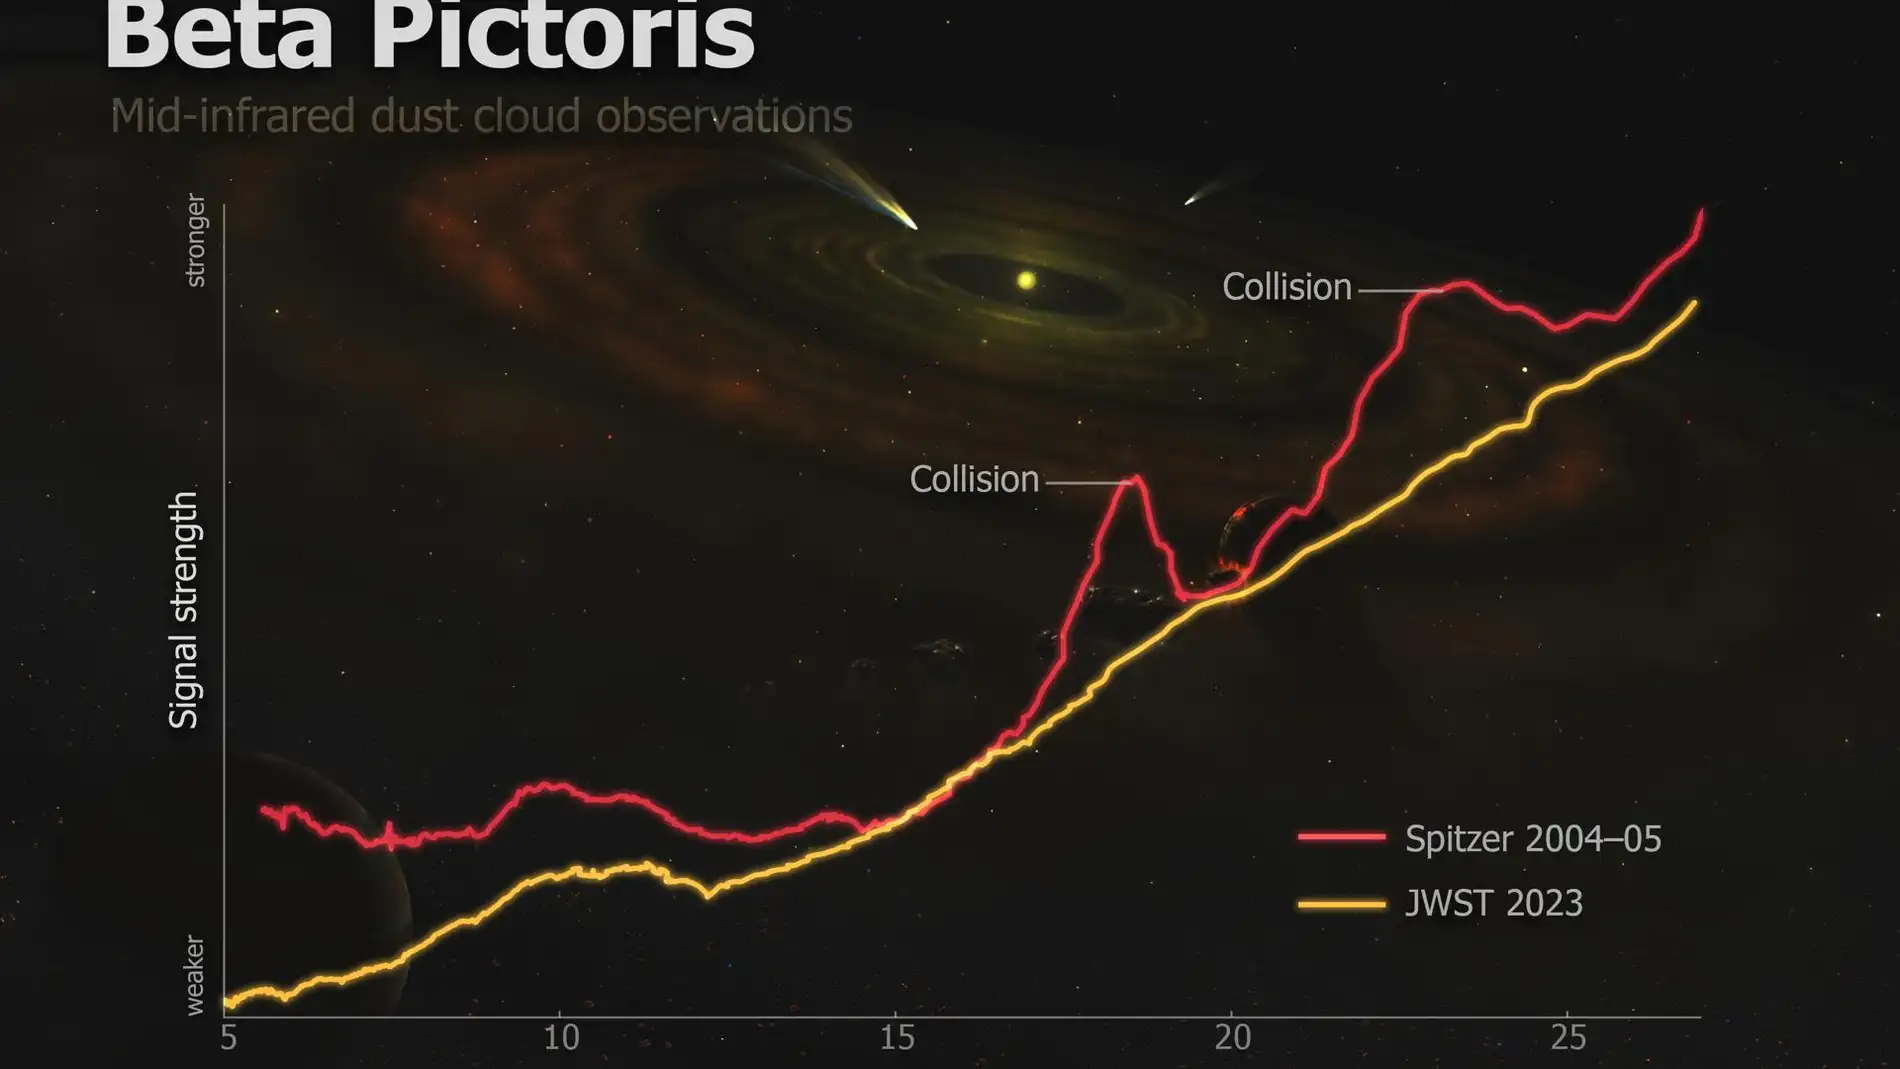 Gráfico de imágenes tomadas por los telescopios James Webb y Spitzer